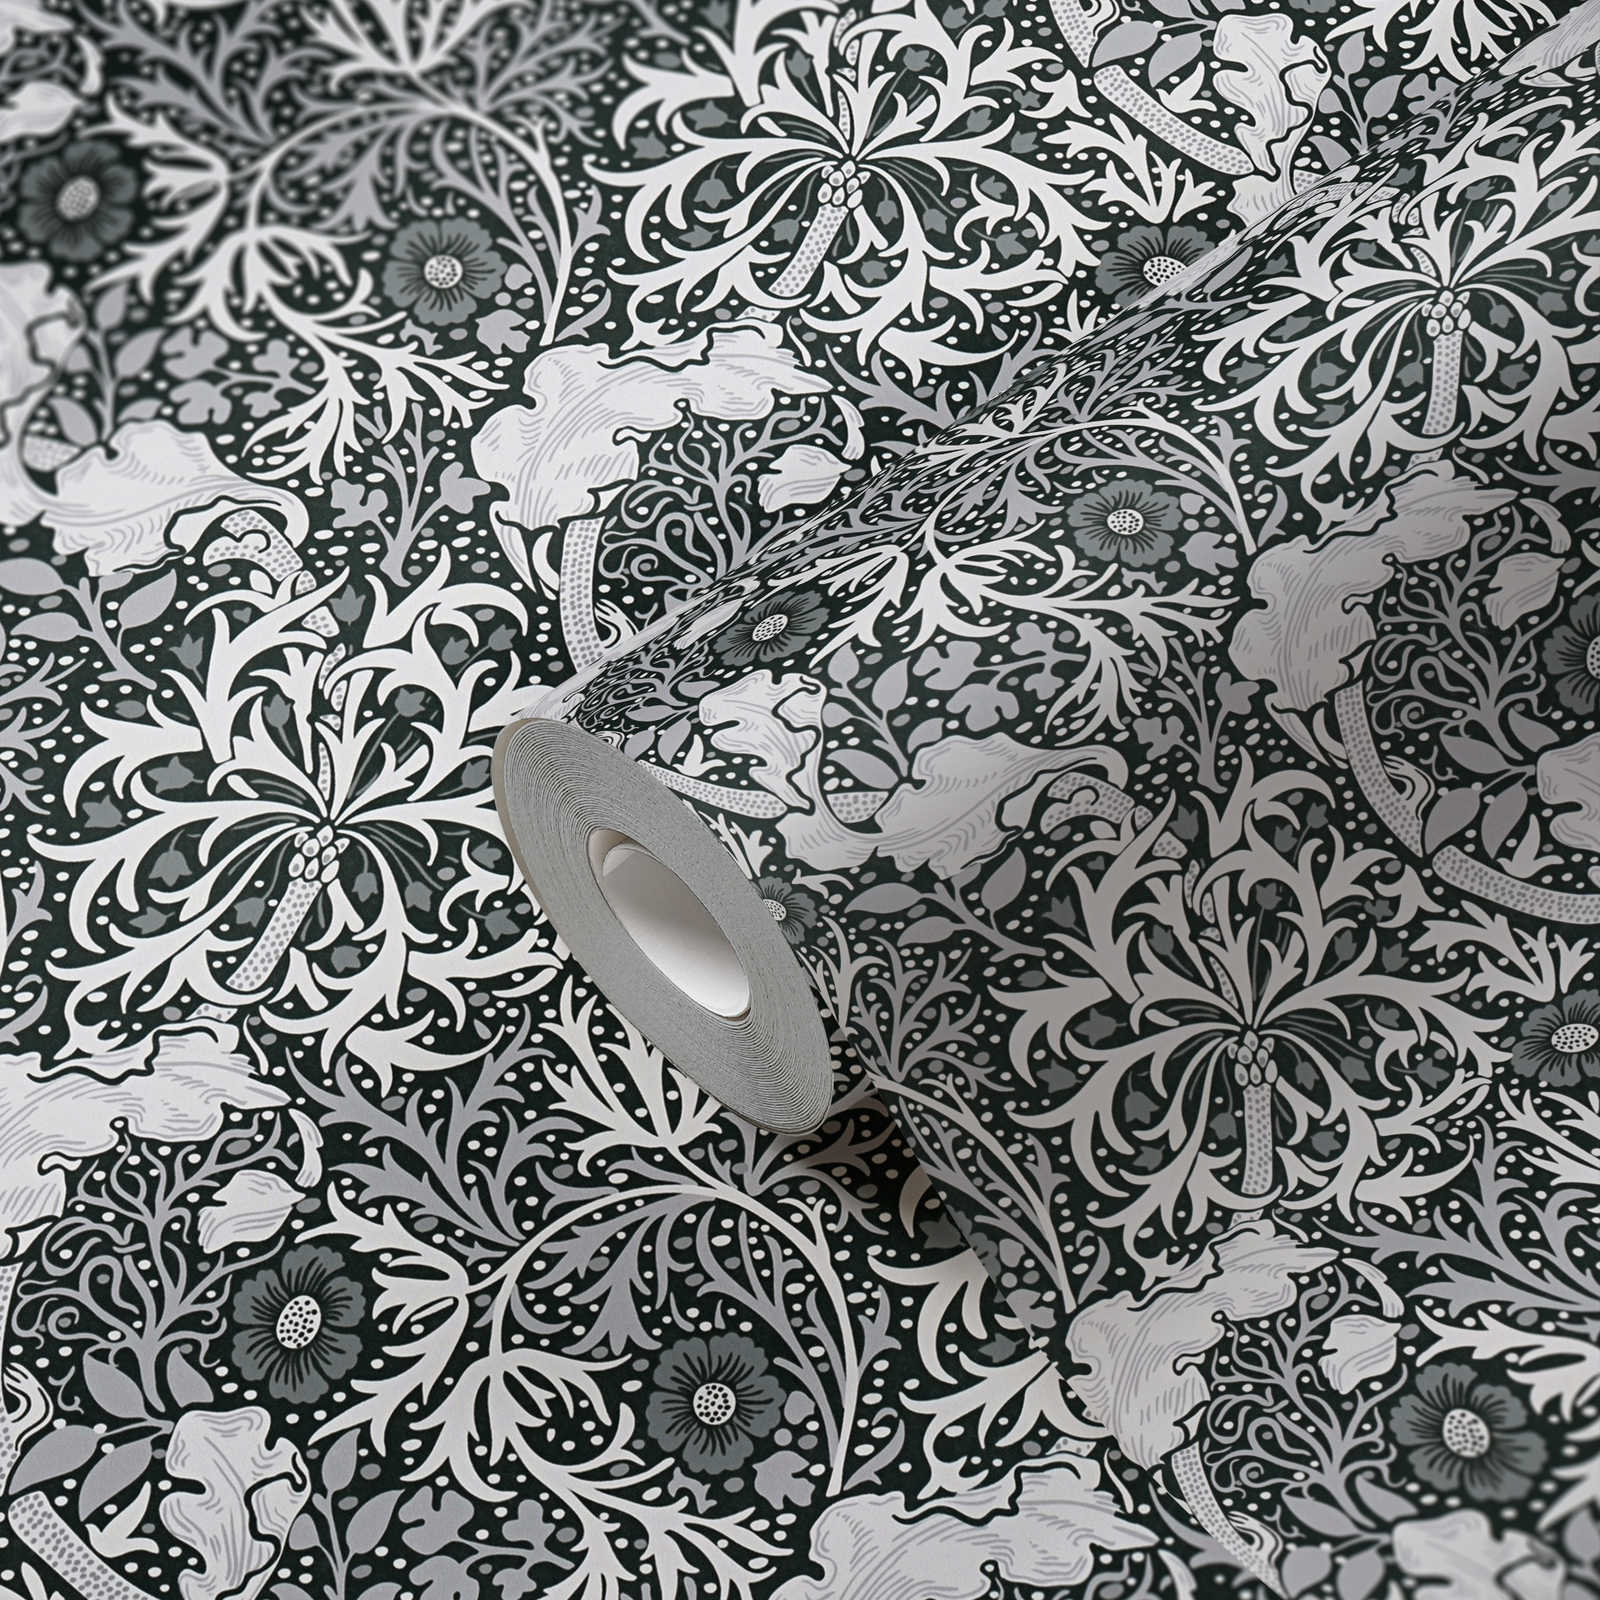             Vliestapete mit floralem Muster Ranken und Blumen – Weiß, Schwarz, Grau
        